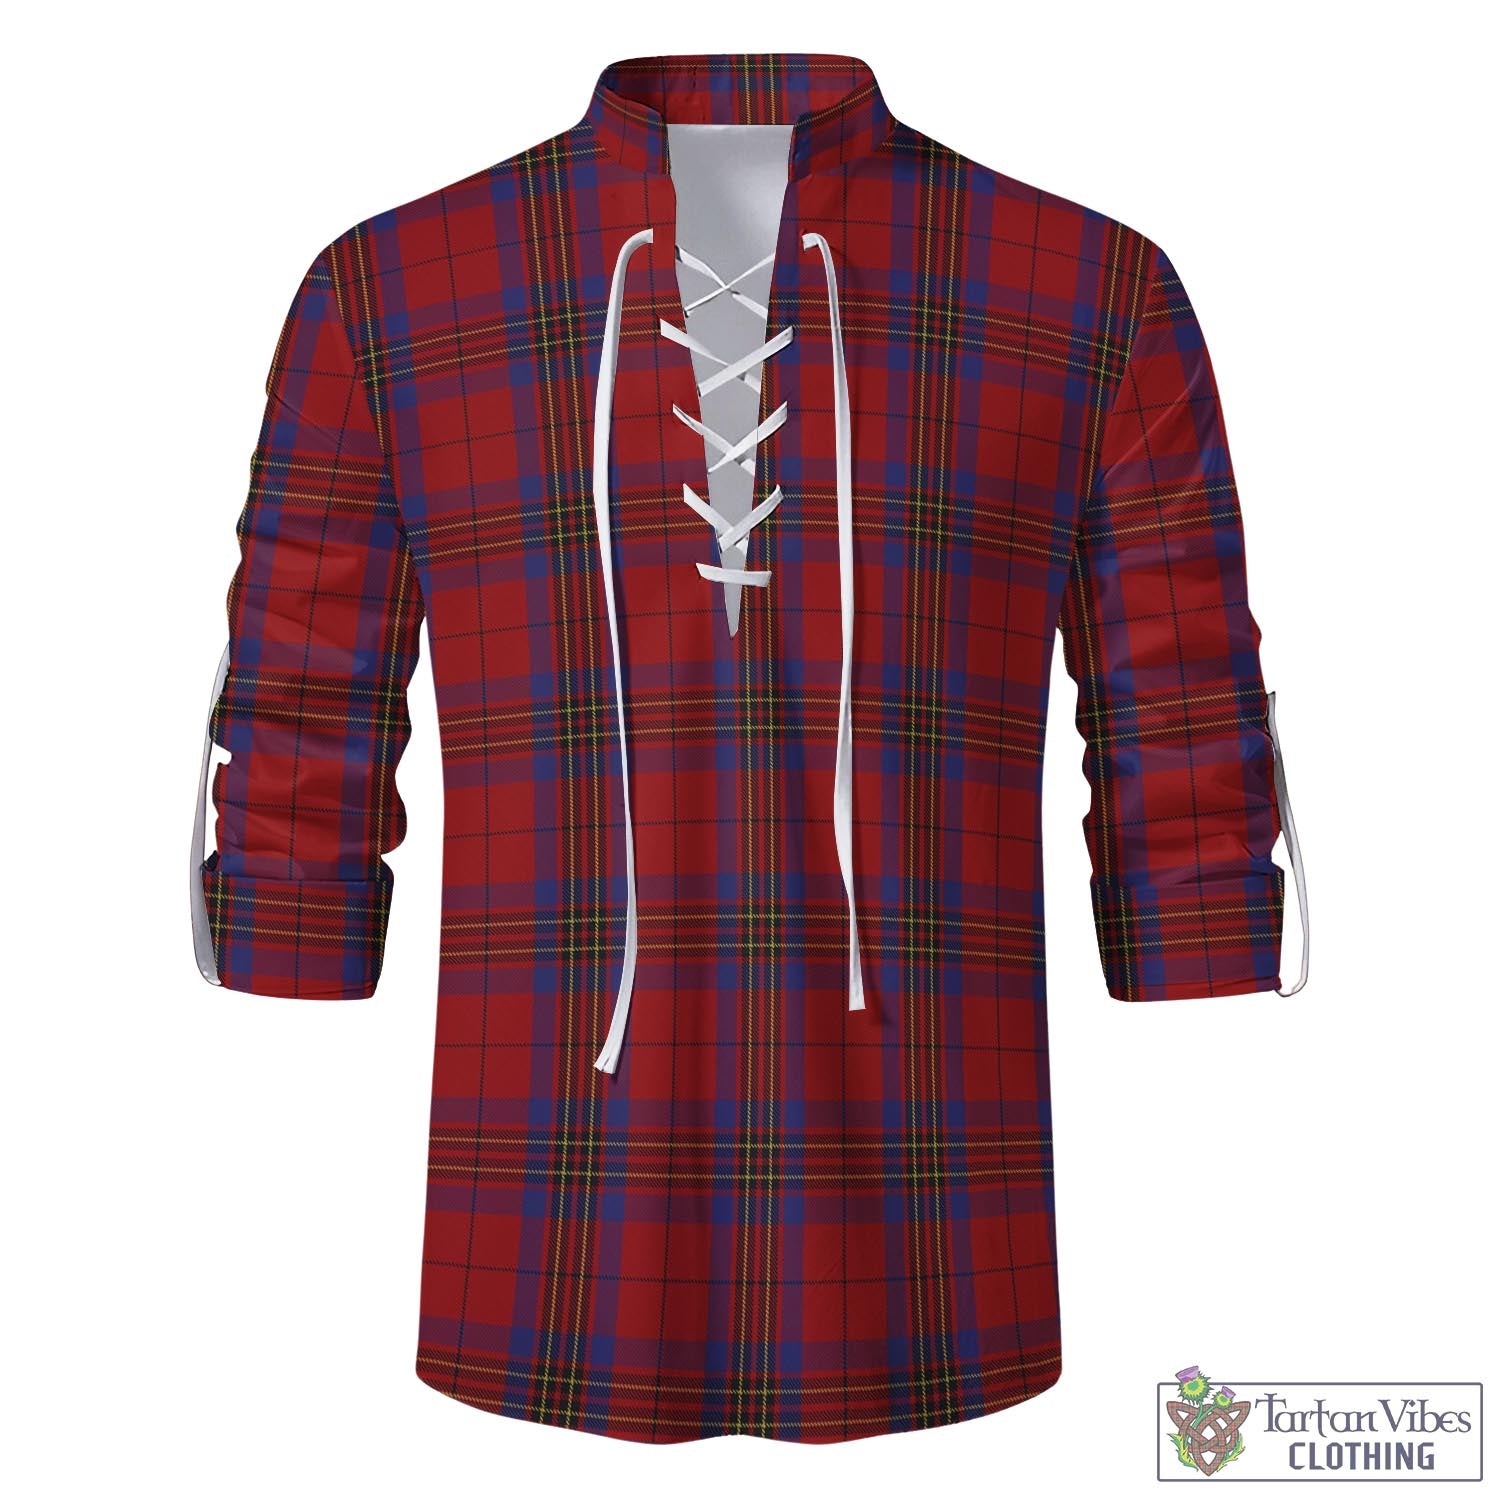 Tartan Vibes Clothing Leslie Red Tartan Men's Scottish Traditional Jacobite Ghillie Kilt Shirt